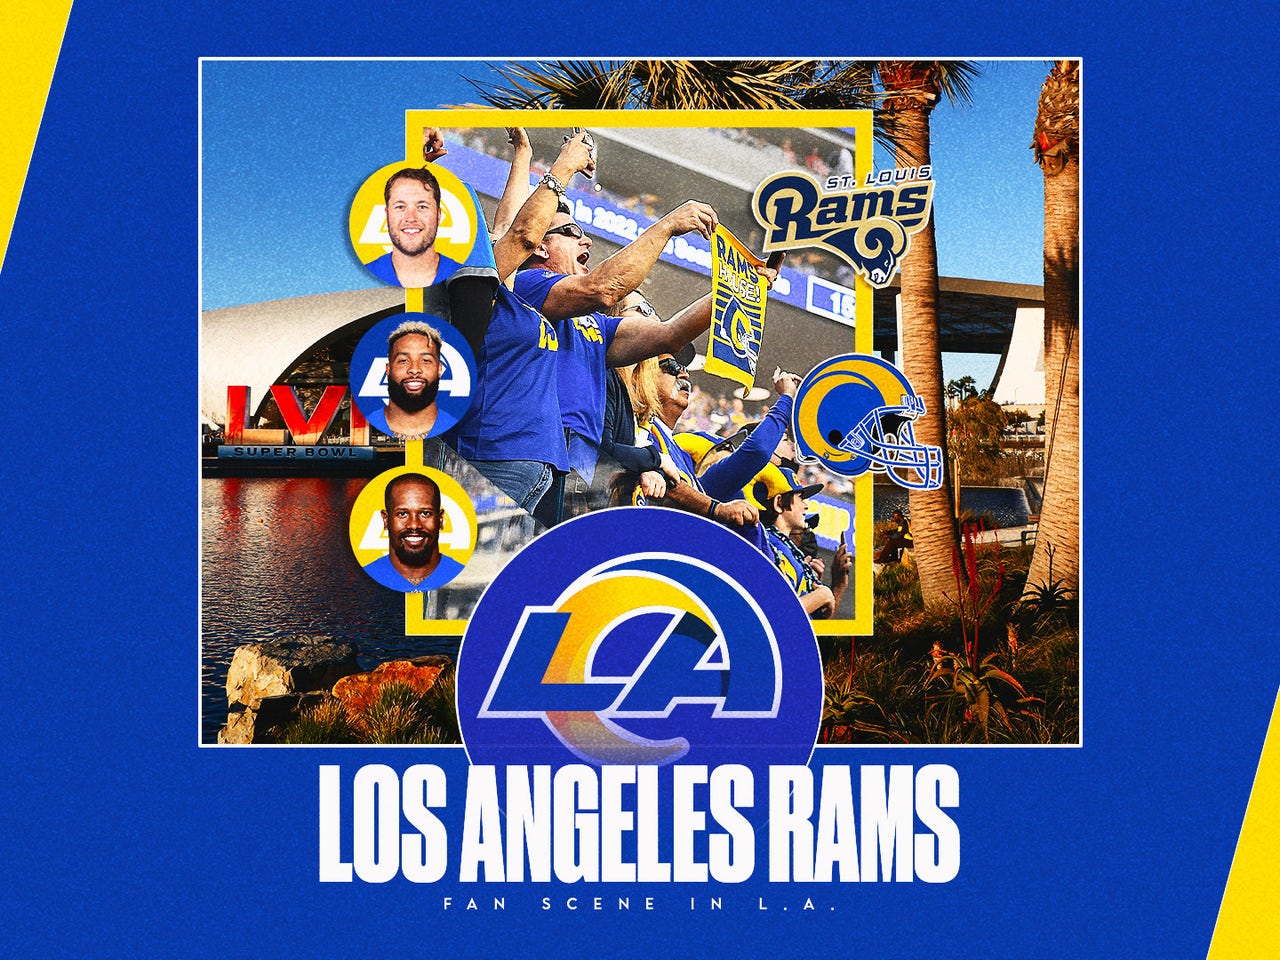 Los Angeles Dodgers - Go get 'em, Los Angeles Rams! We're rooting